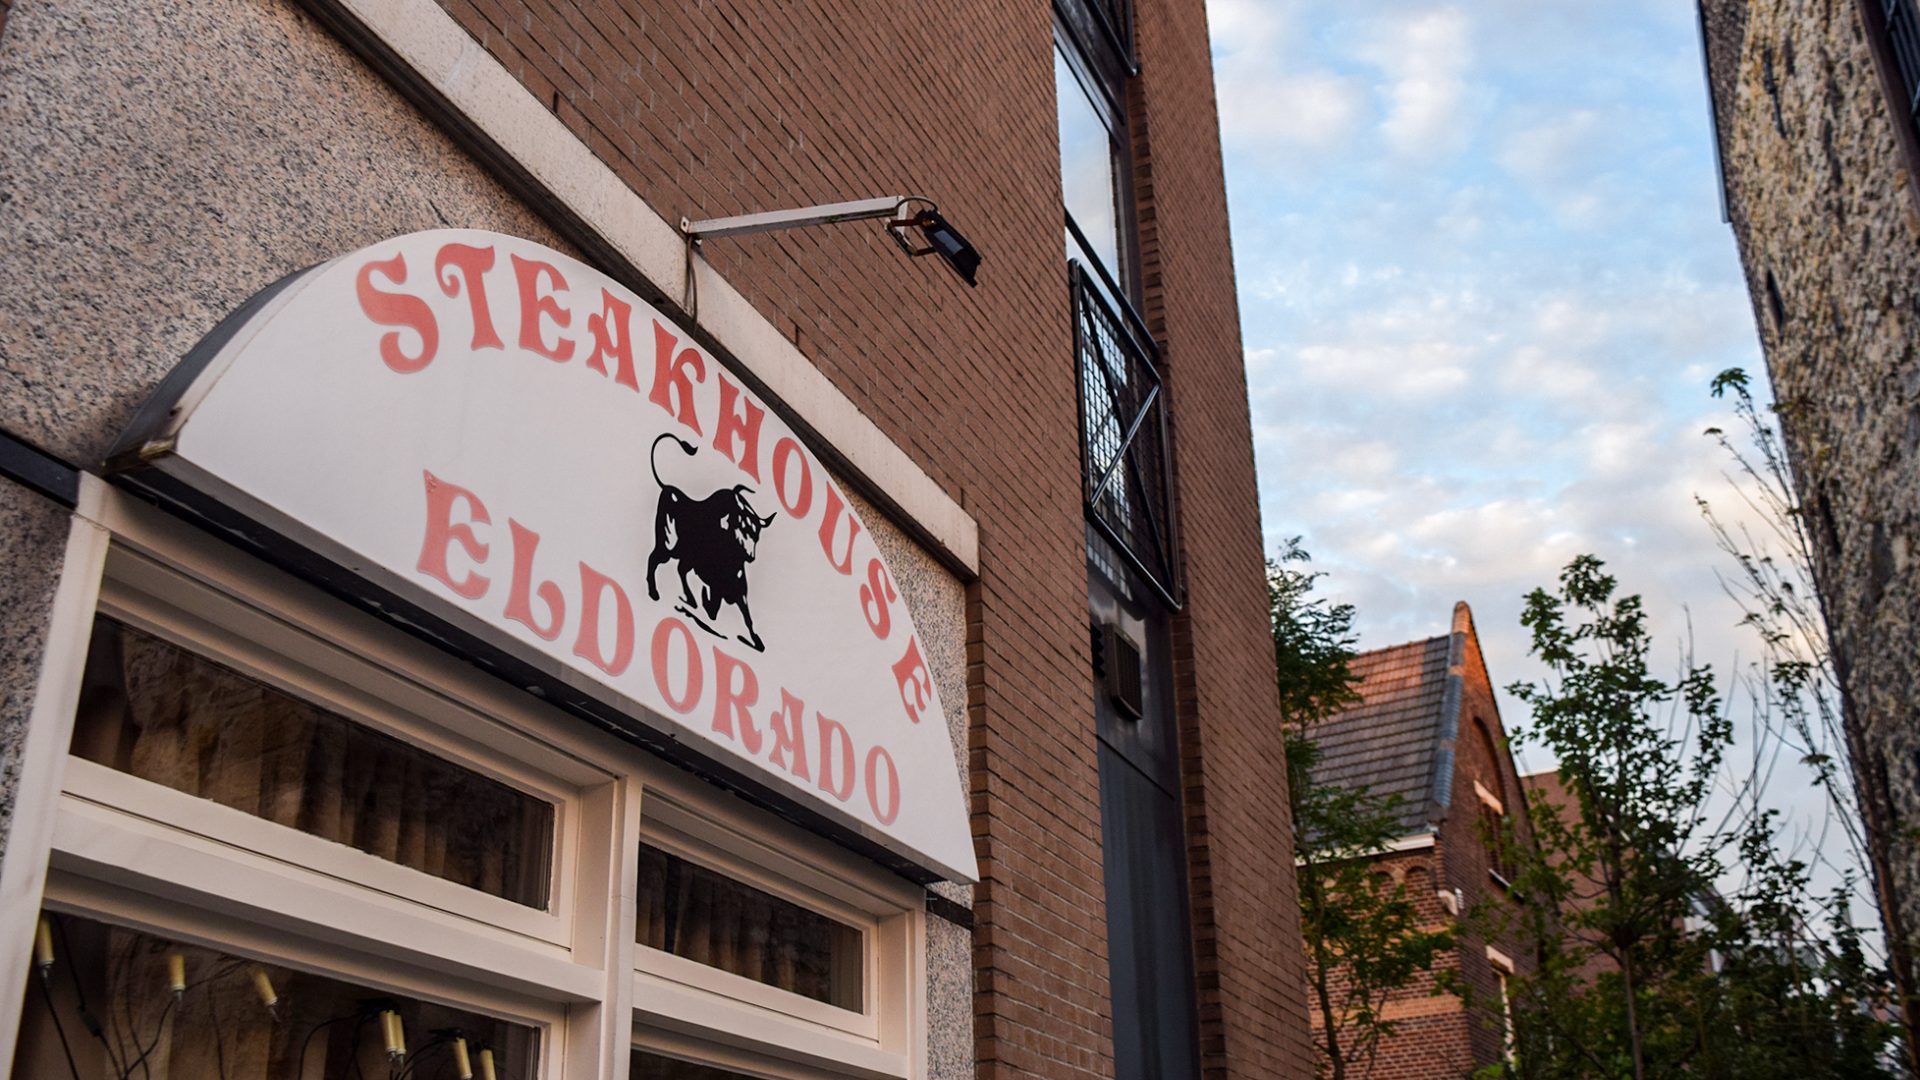 Steakhouse Eldorado